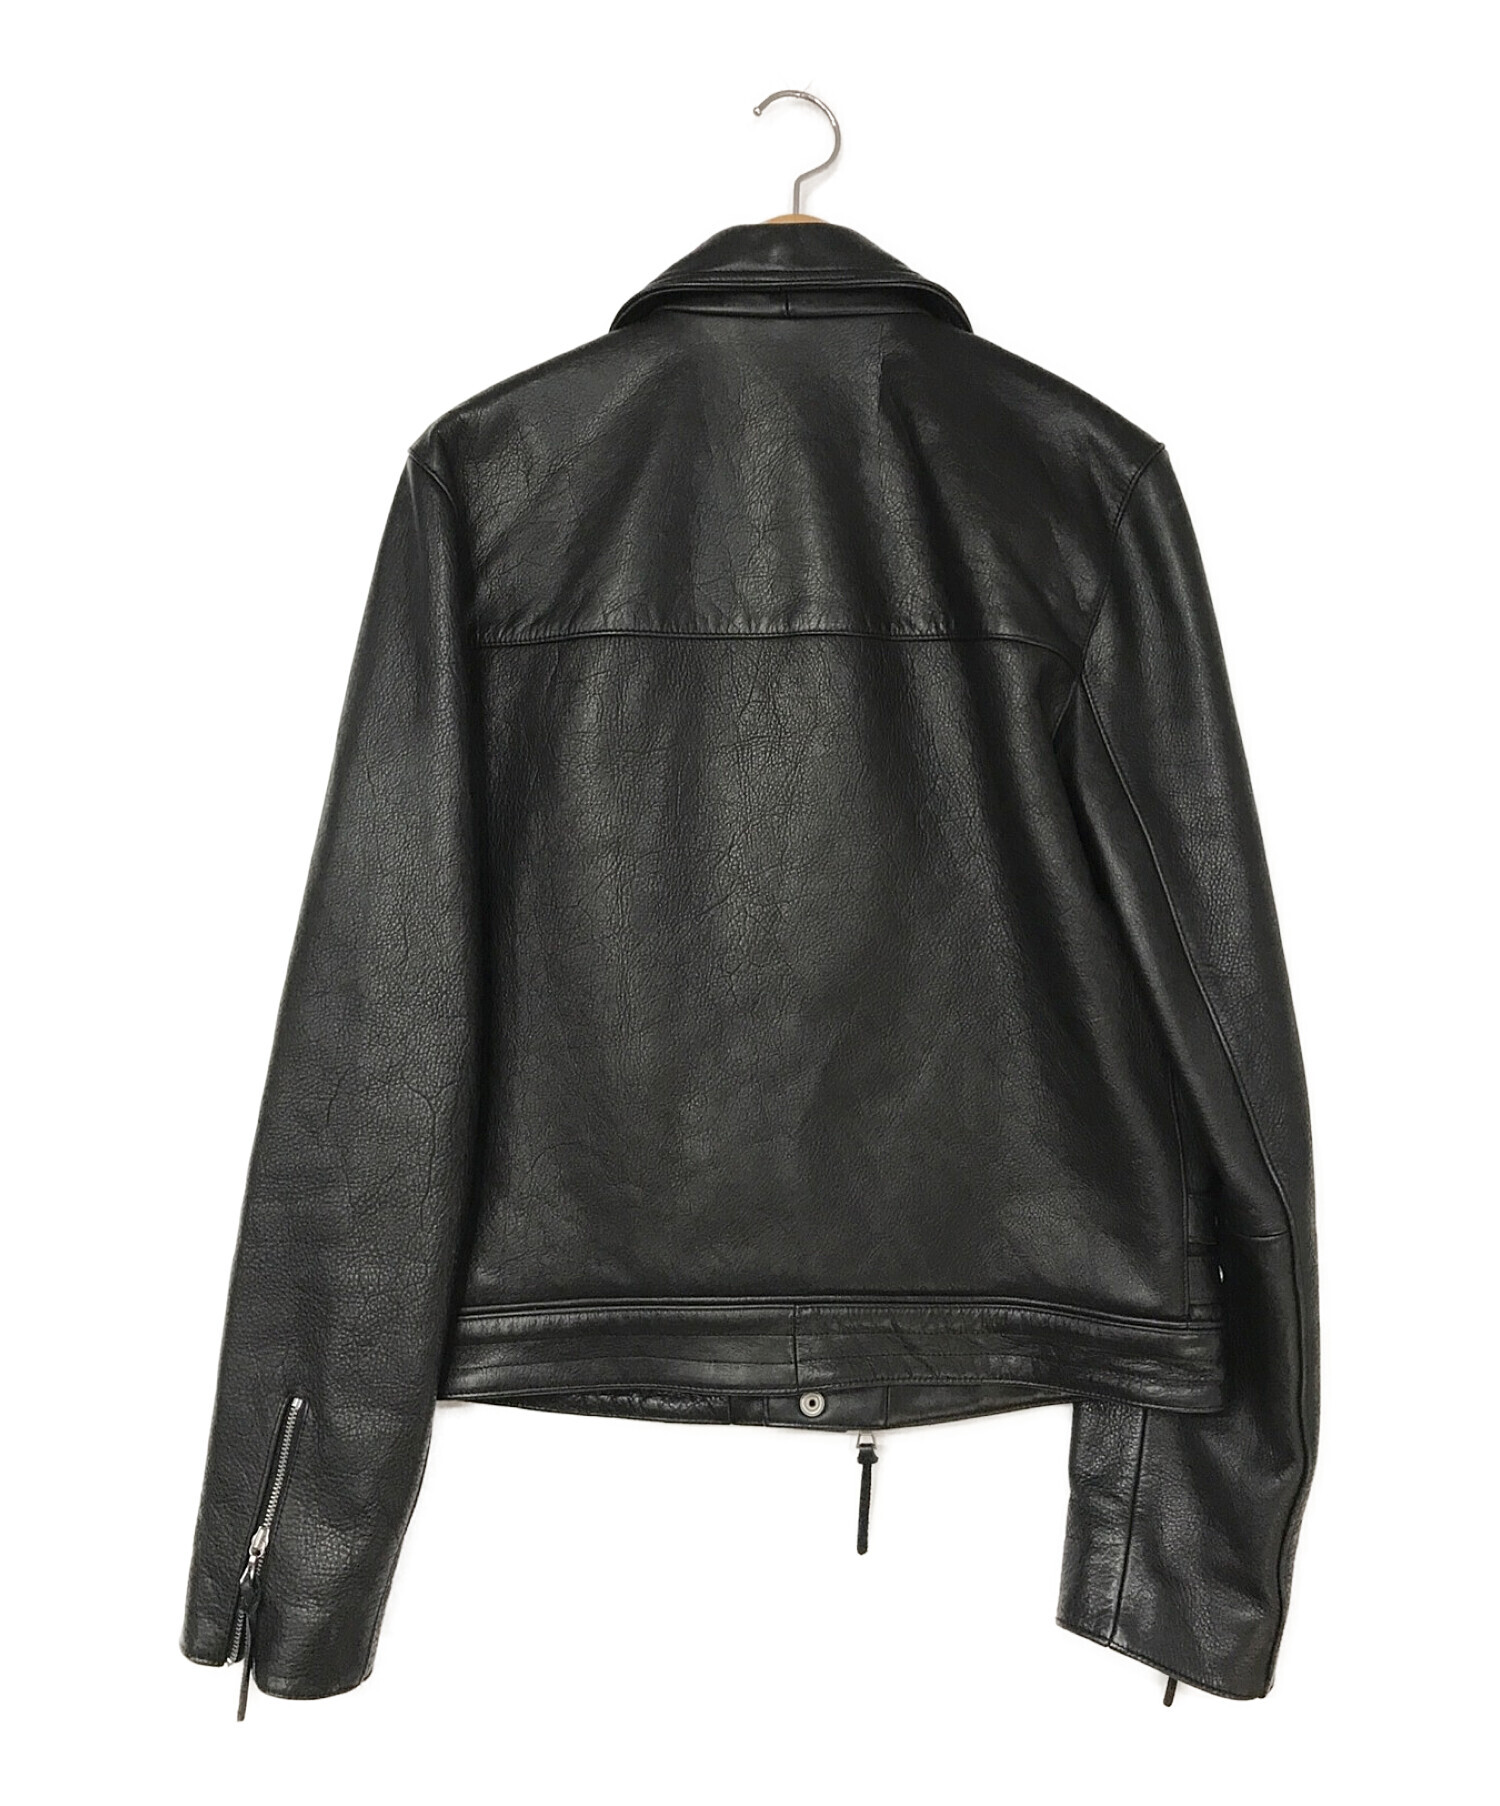 GAP×JOHN ELLIOTT (ギャップ×ジョンエリオット) ライダースジャケット ブラック サイズ:S